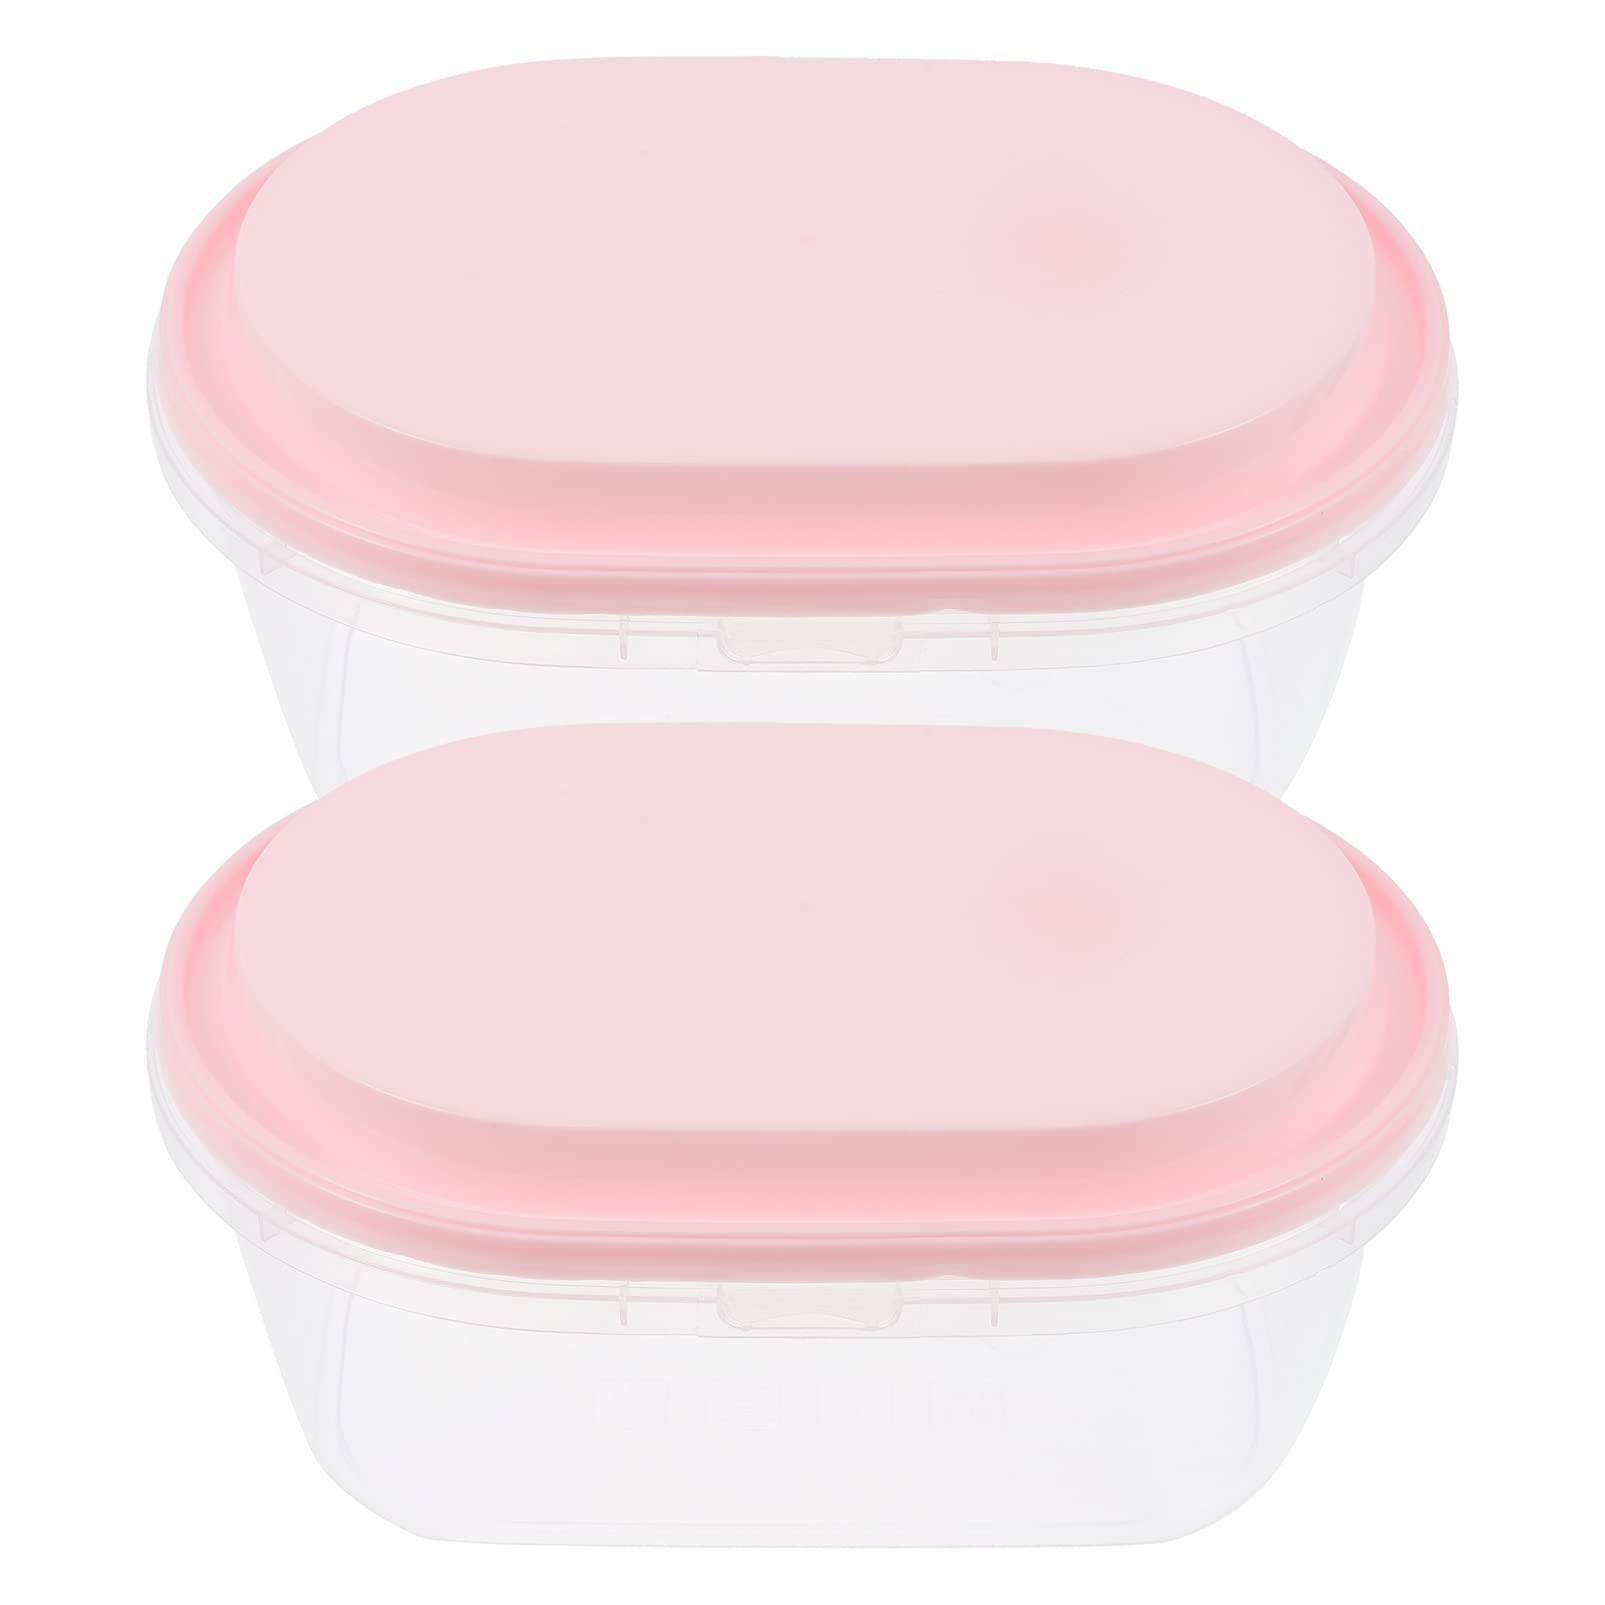 DOITOOL 2pcs Ice Cream Storage Freezer Container With Lids Ice Cream Tubs Freezer Containers for Homemade Ice Cream 1000ml Pink